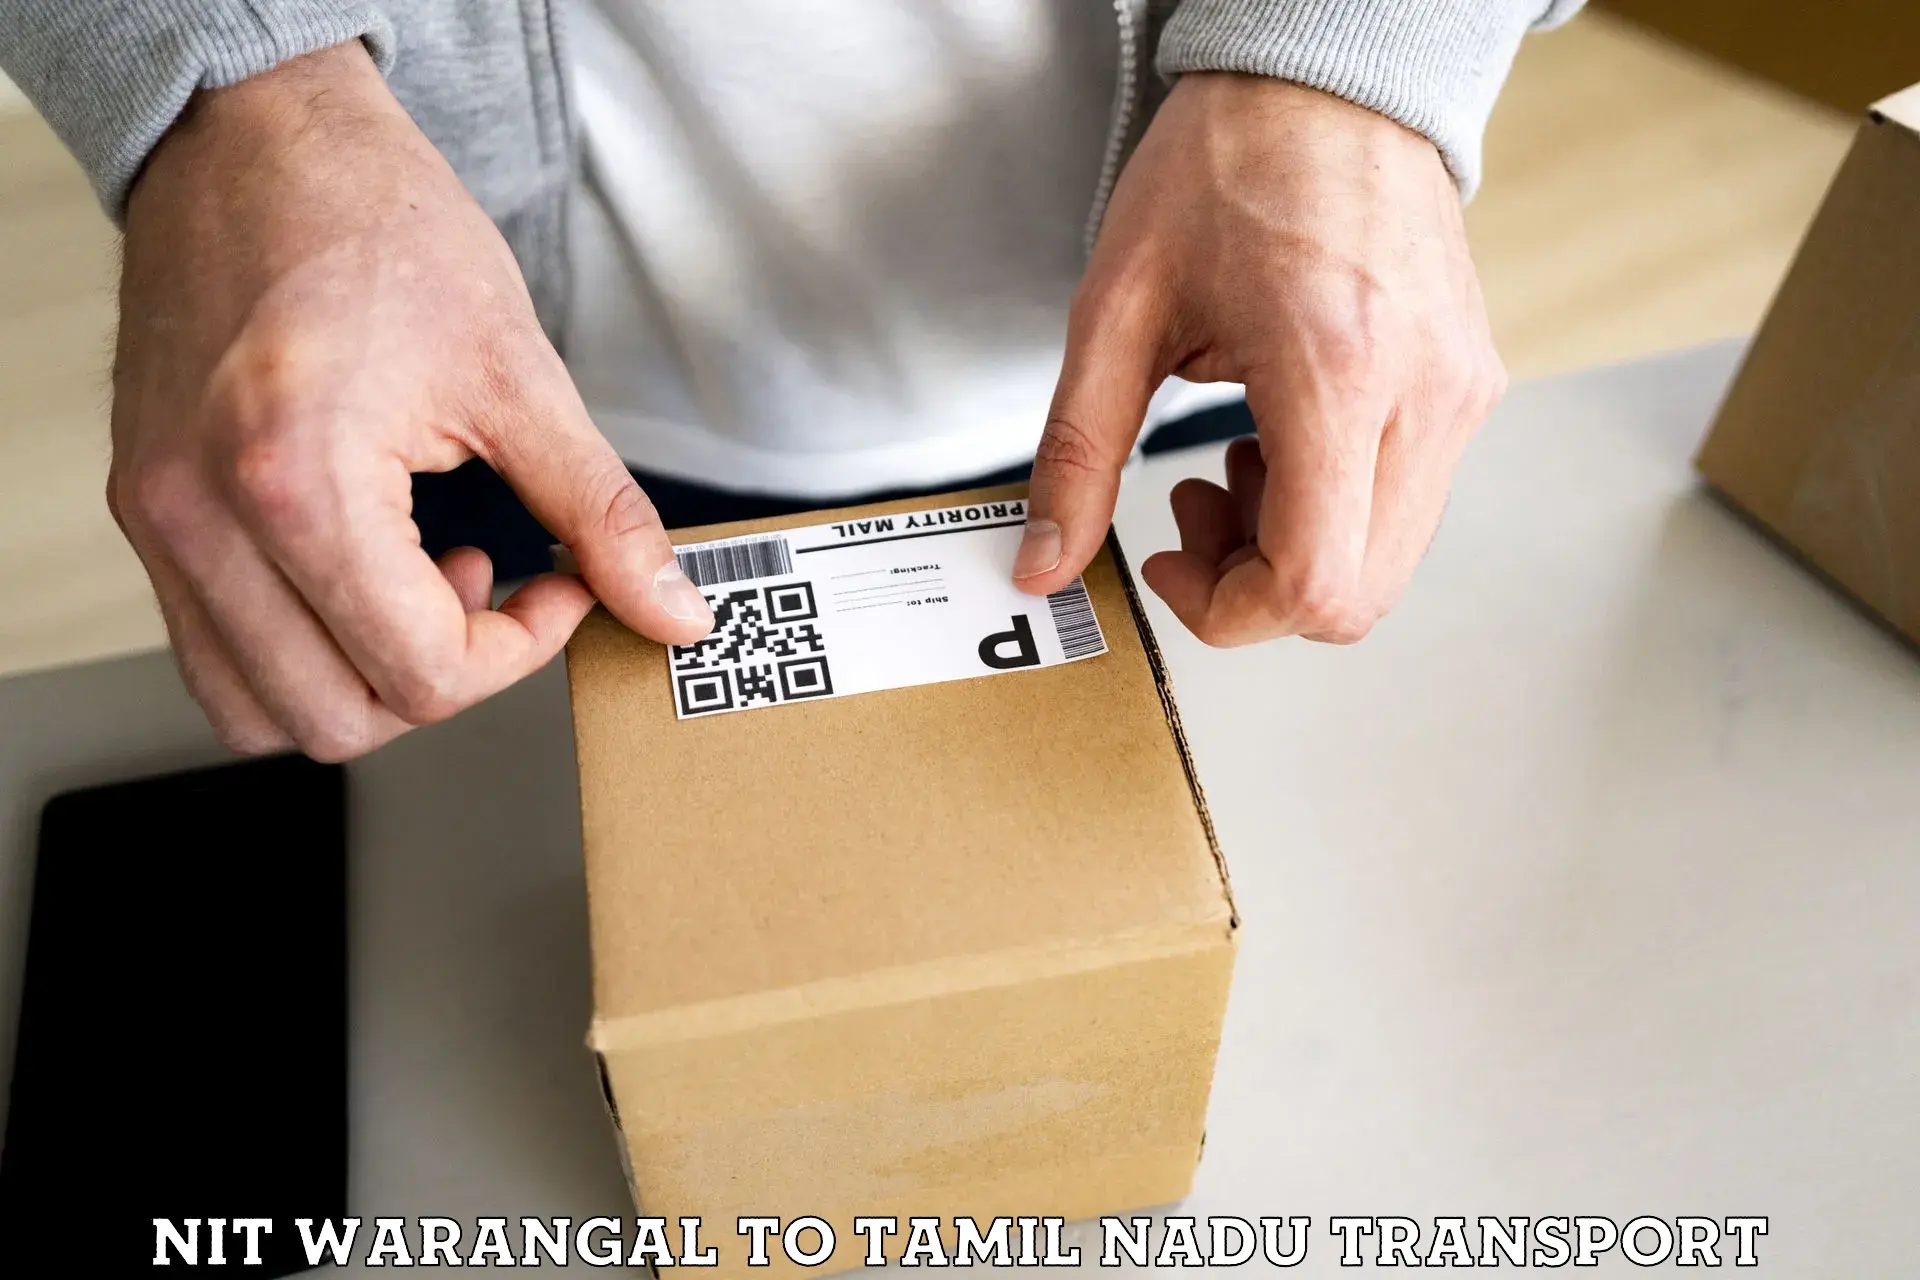 Daily transport service NIT Warangal to Parangimalai